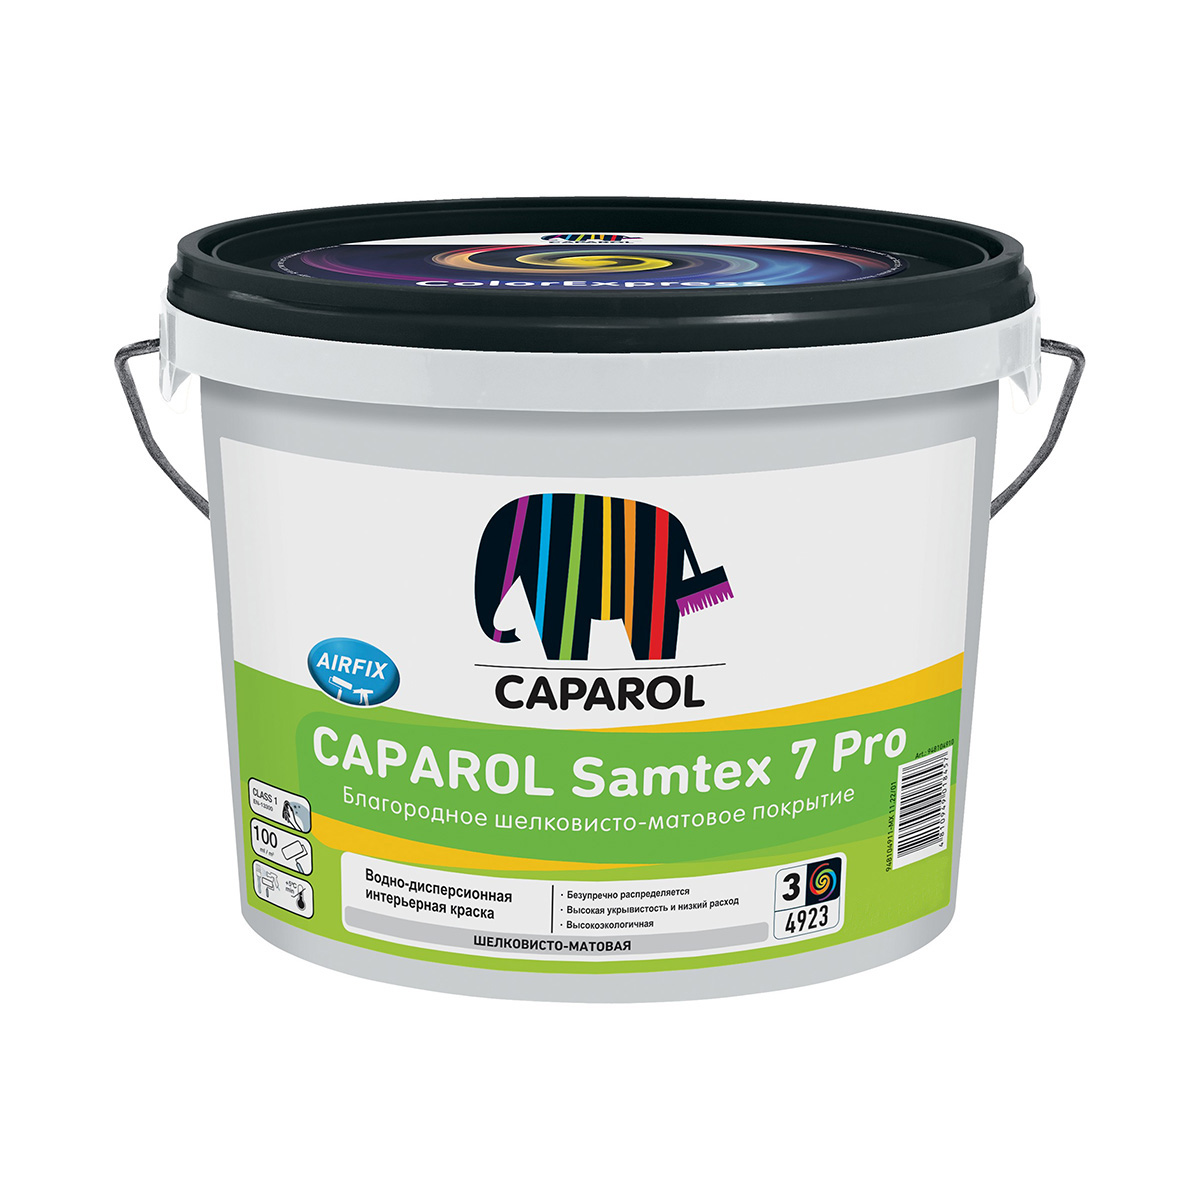 Краска интерьерная Caparol Samtex 7 Pro, акриловая, база 3, бесцветная, 9,4 краска интерьерная caparol samtex 3 pro база 3 бесцветная 9 4 л